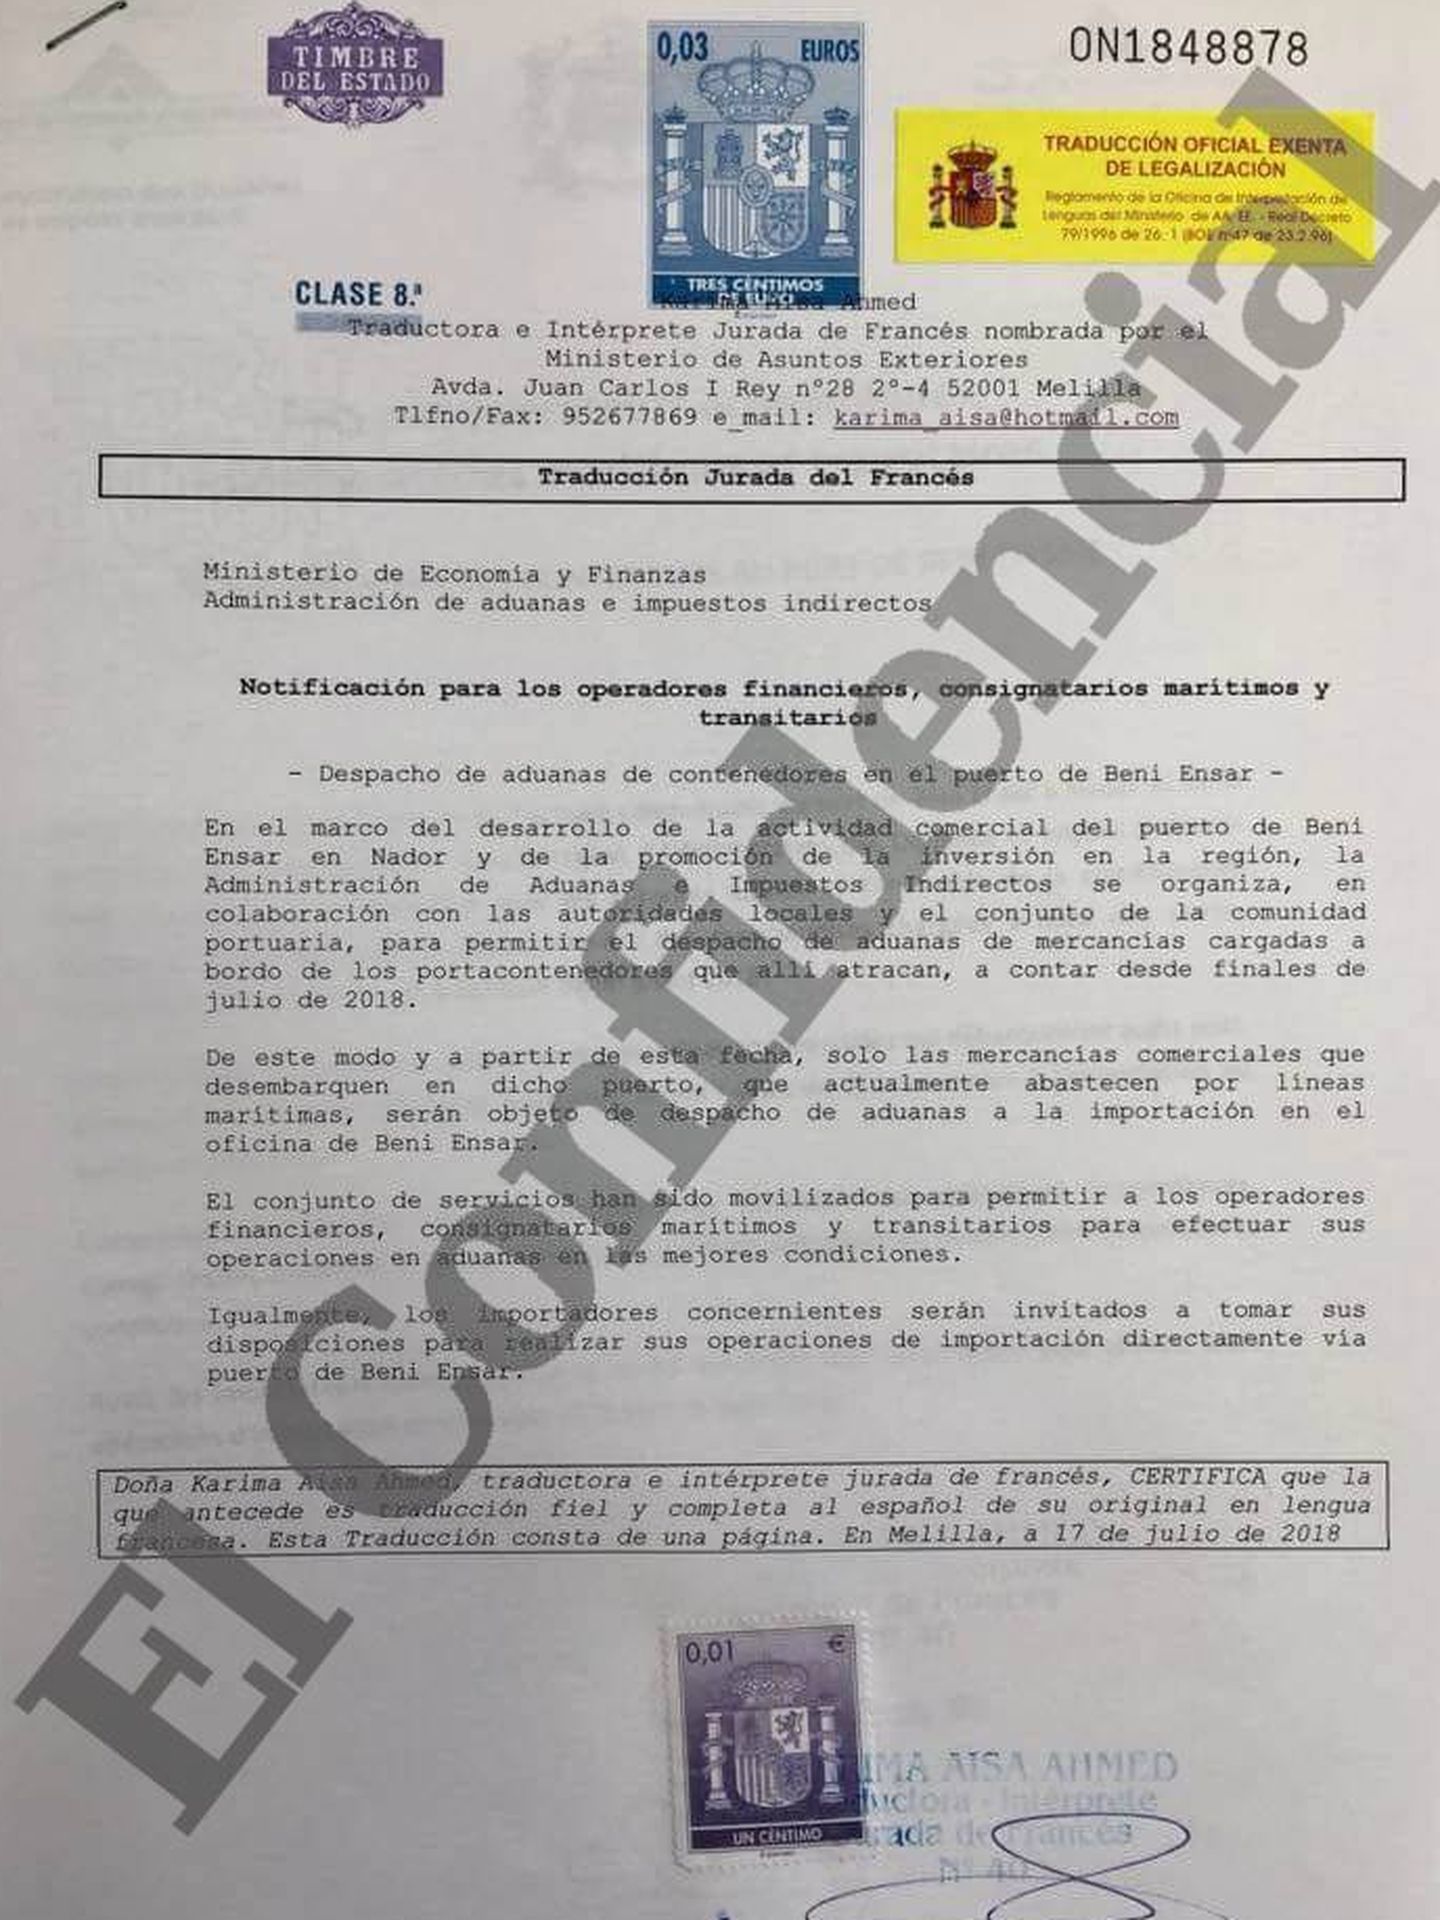 Haz clic aquí para ver el documento del cierre definitivo de la aduana en español.